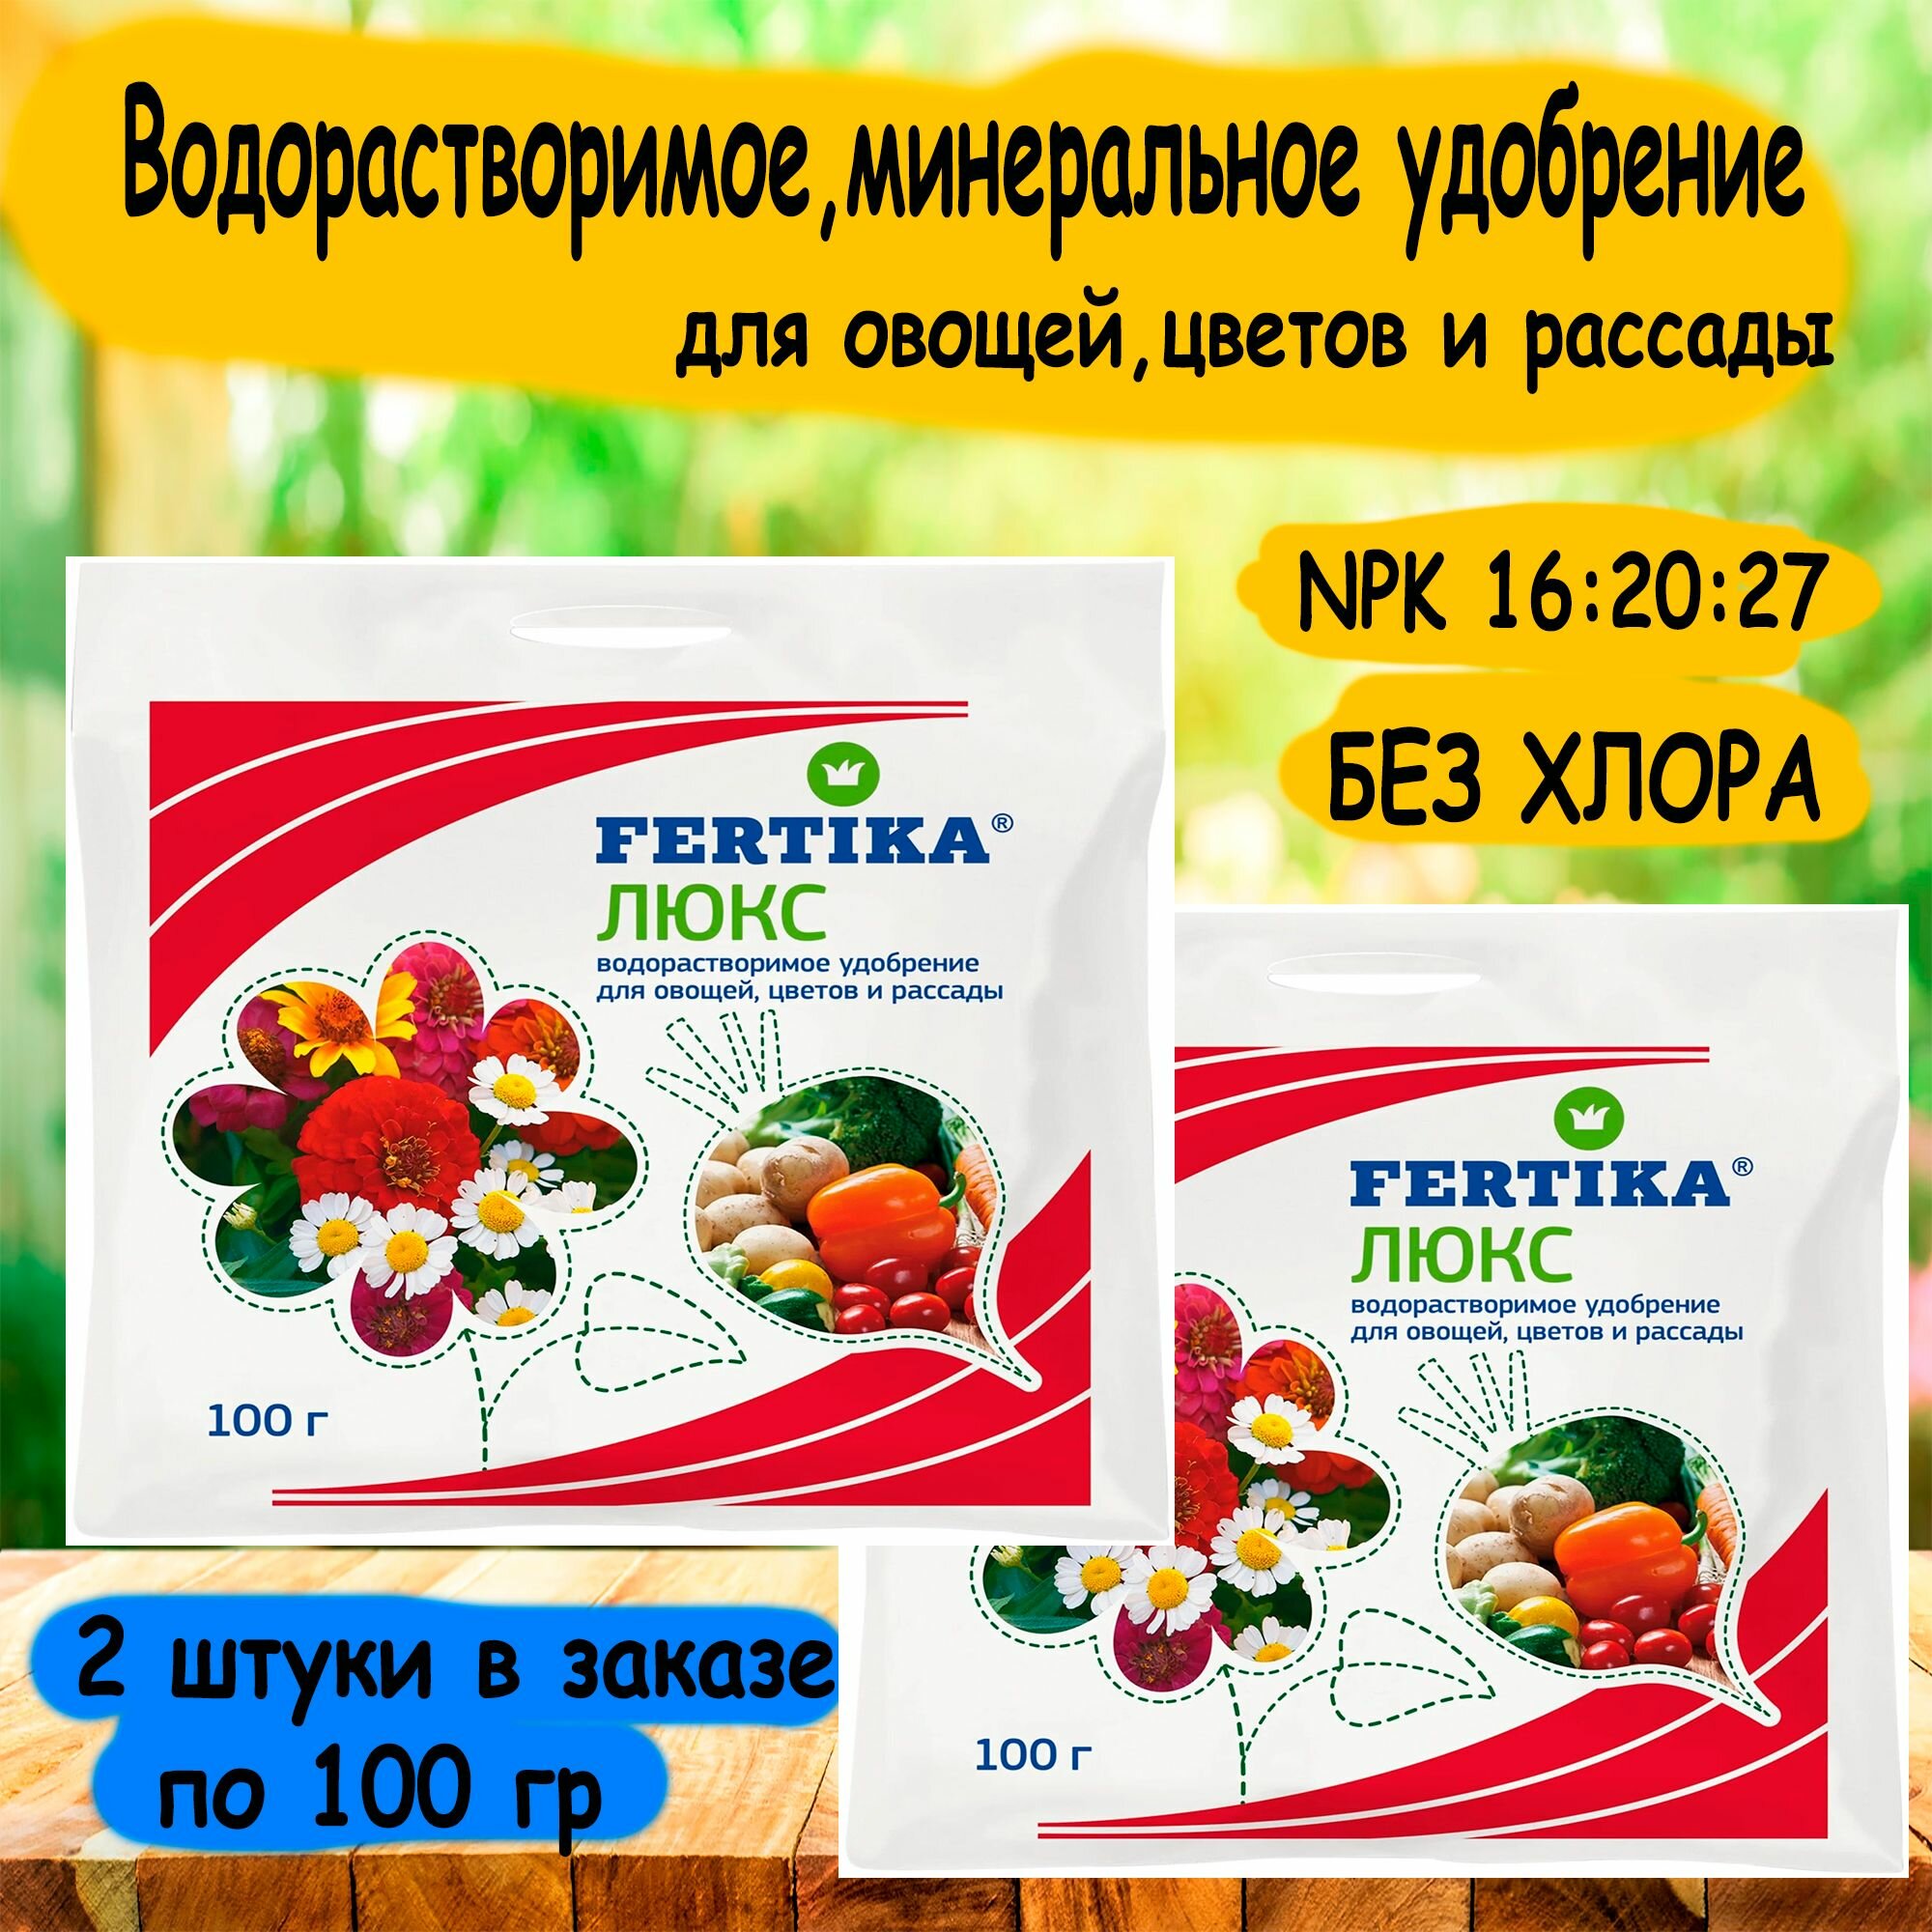 Минеральное удобрение 'FERTIKA' Люкс для овощей, цветов и рассады 100 г. 2 штуки